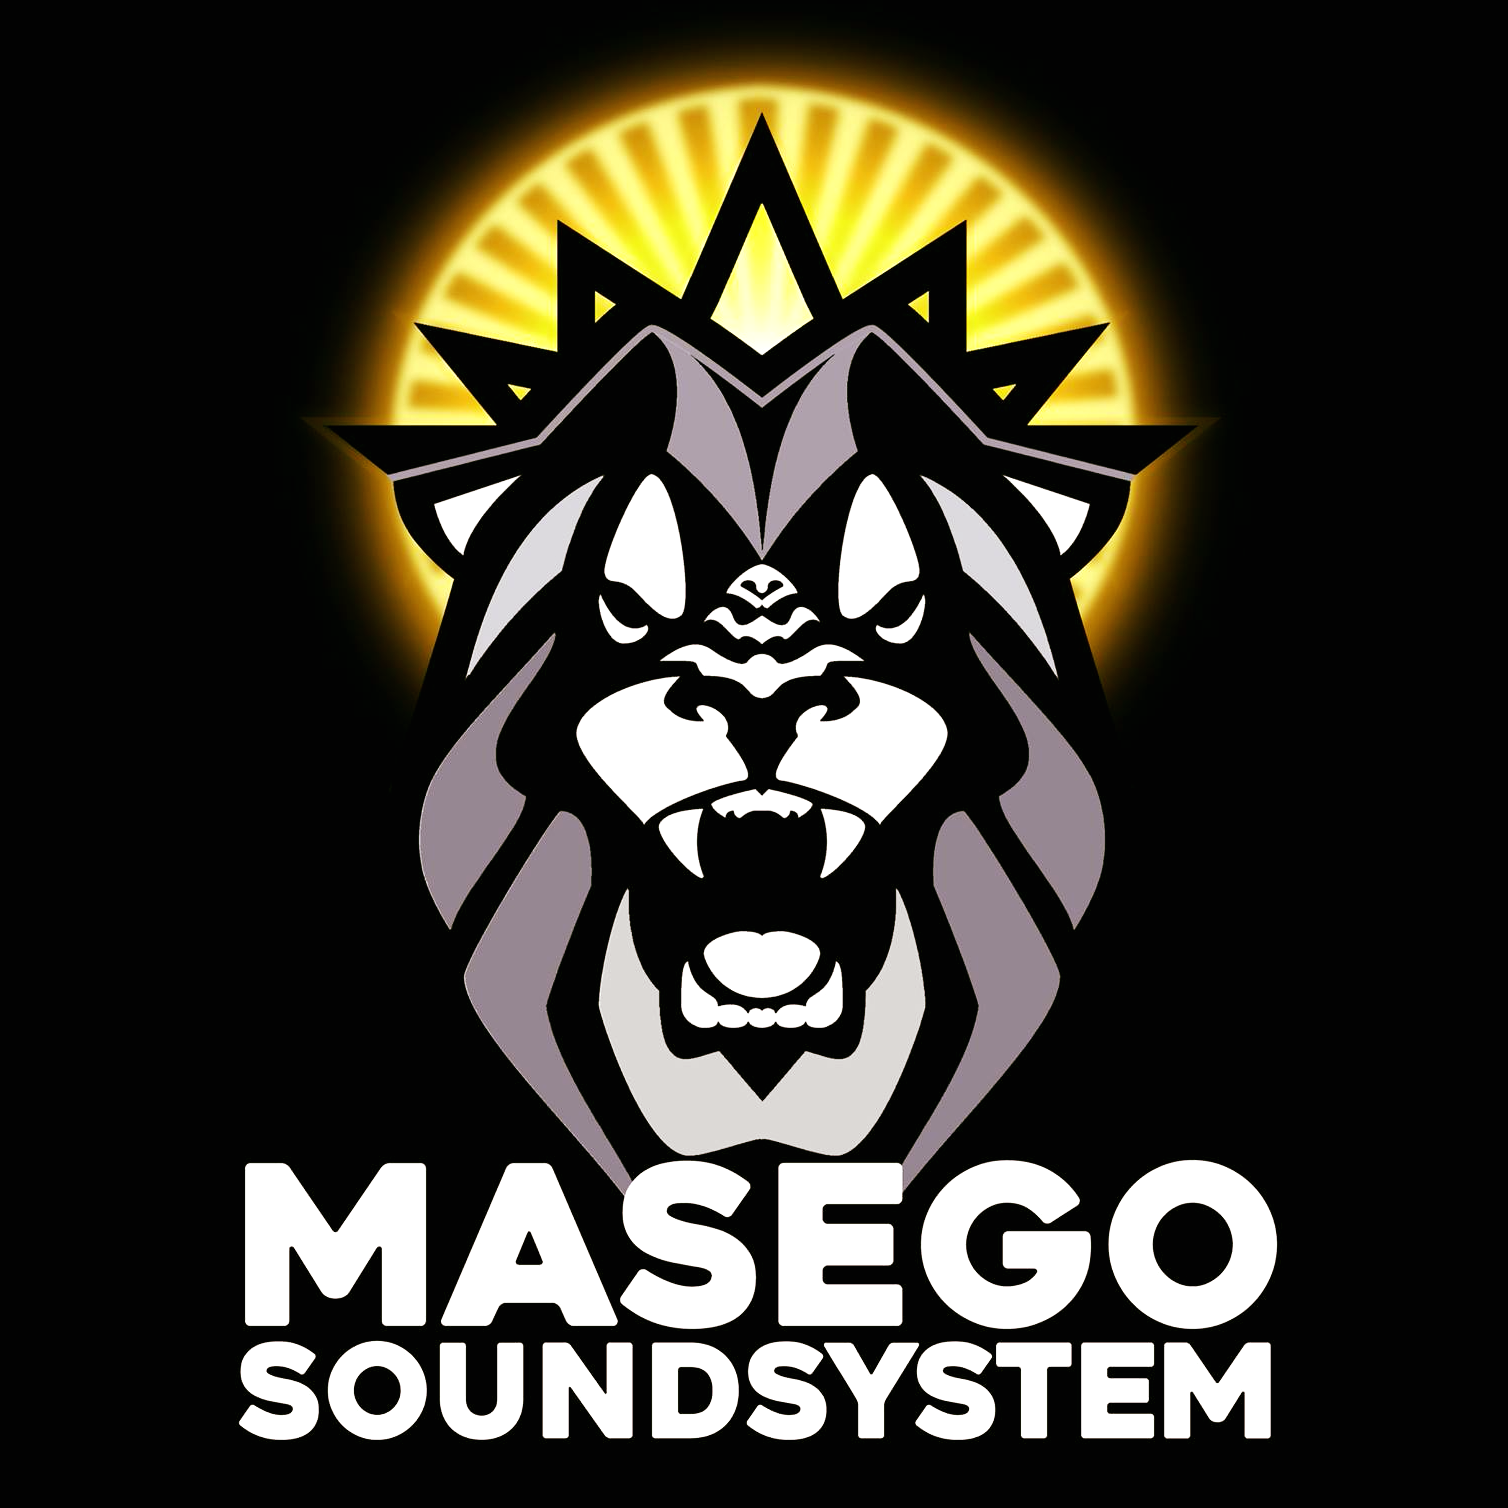 Masego Soundsystem